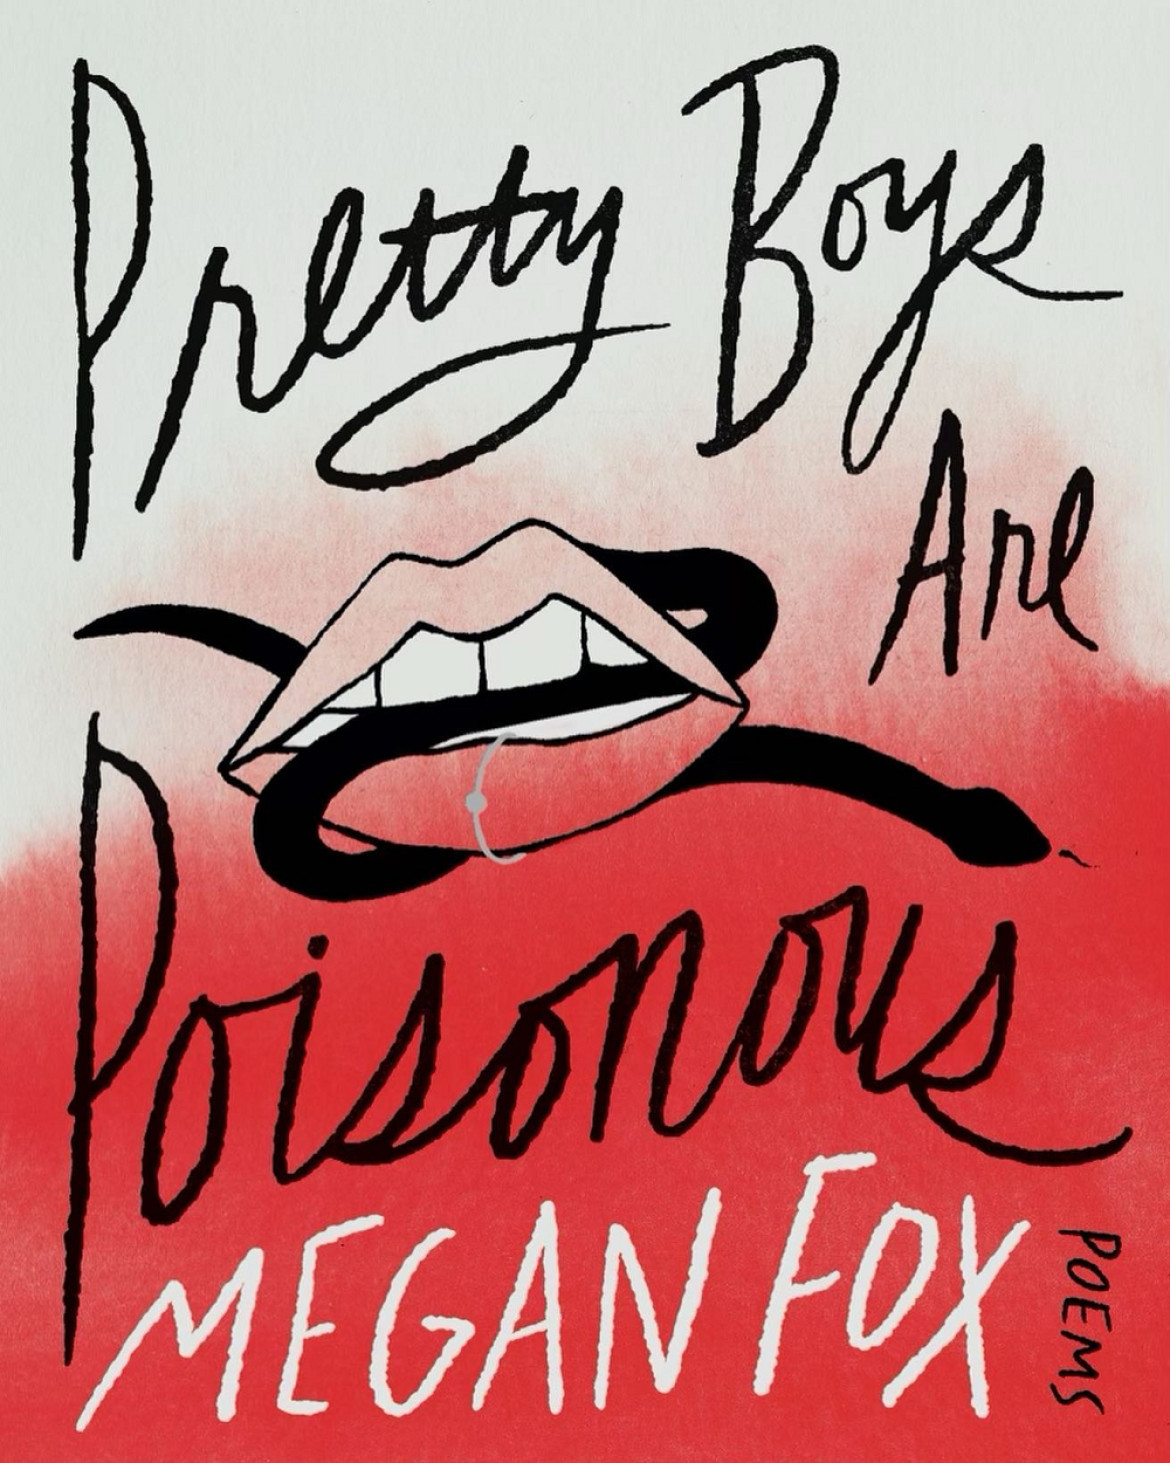 La tapa del libro de poemas de Megan Fox. Foto: Instagram.